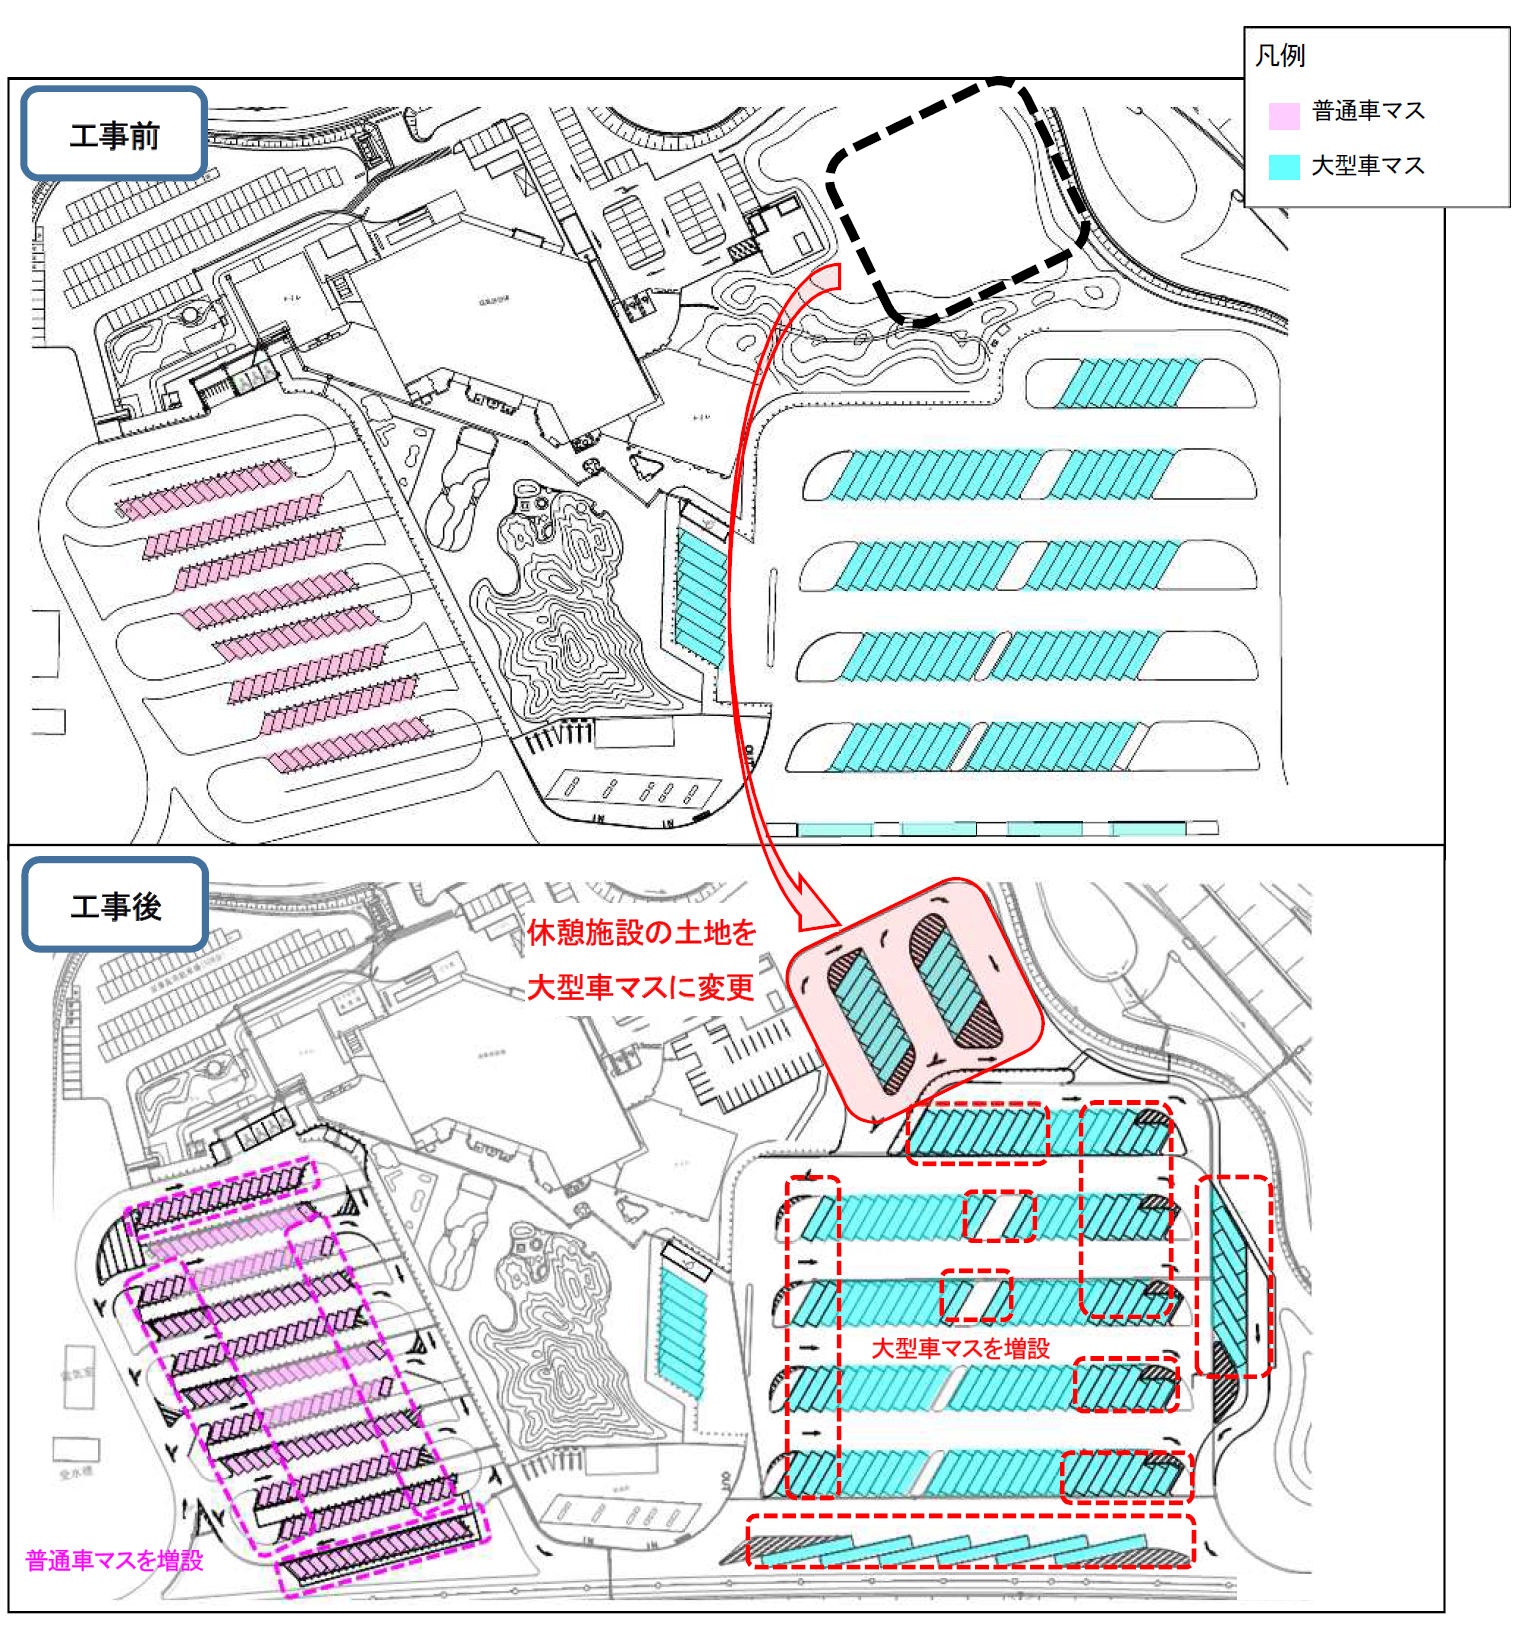 駐車マスの増設状況（E1A新東名 静岡SA(上り)）のイメージ画像